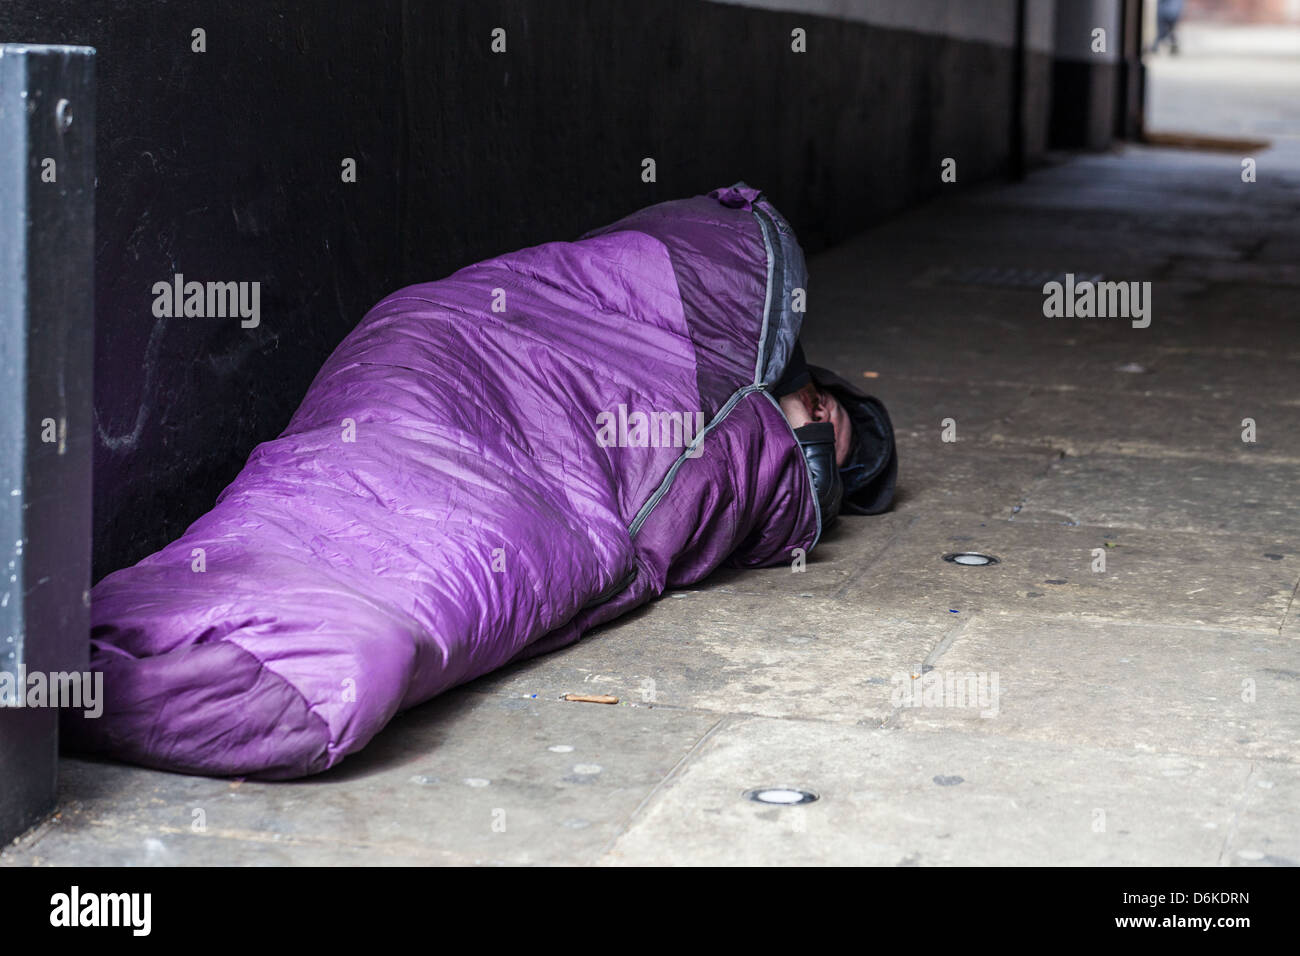 Sans-abri dorment dans la rue dans un sac de couchage, Londres, Angleterre, Royaume-Uni. Banque D'Images